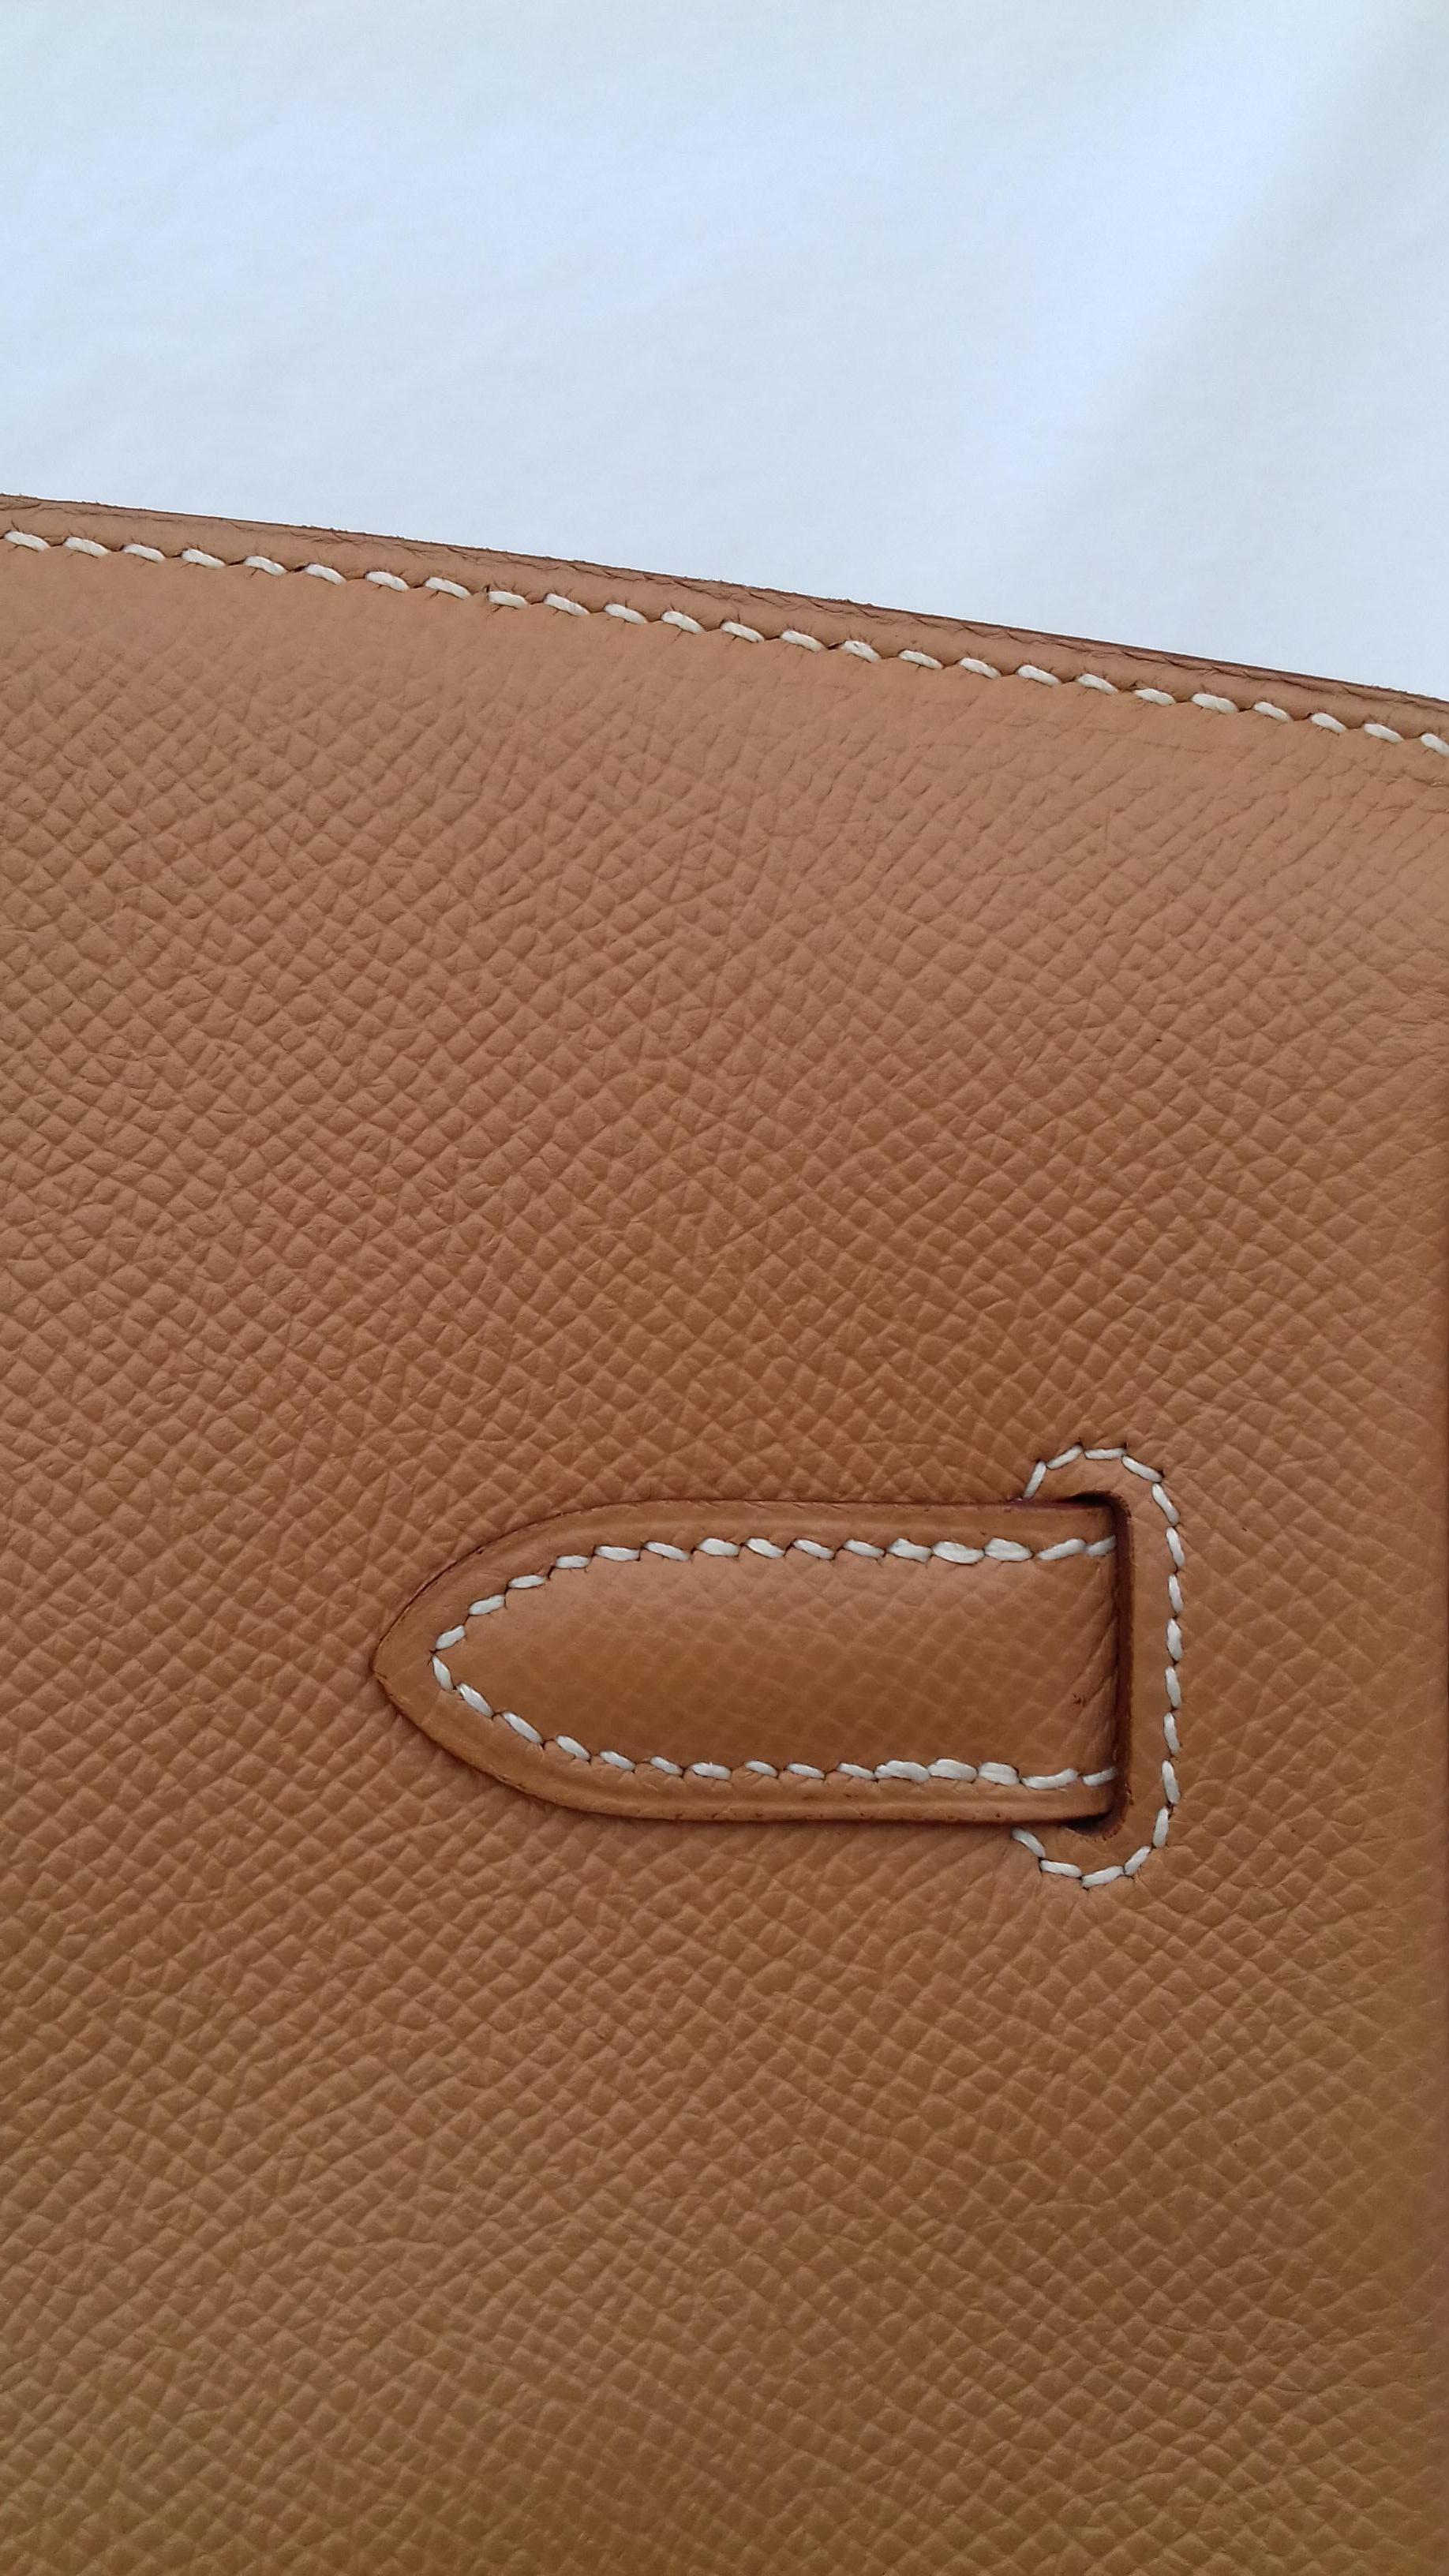 Hermès Birkin Top Handle Bag Naturel Epsom Leather Gold Hdw 35 cm 8